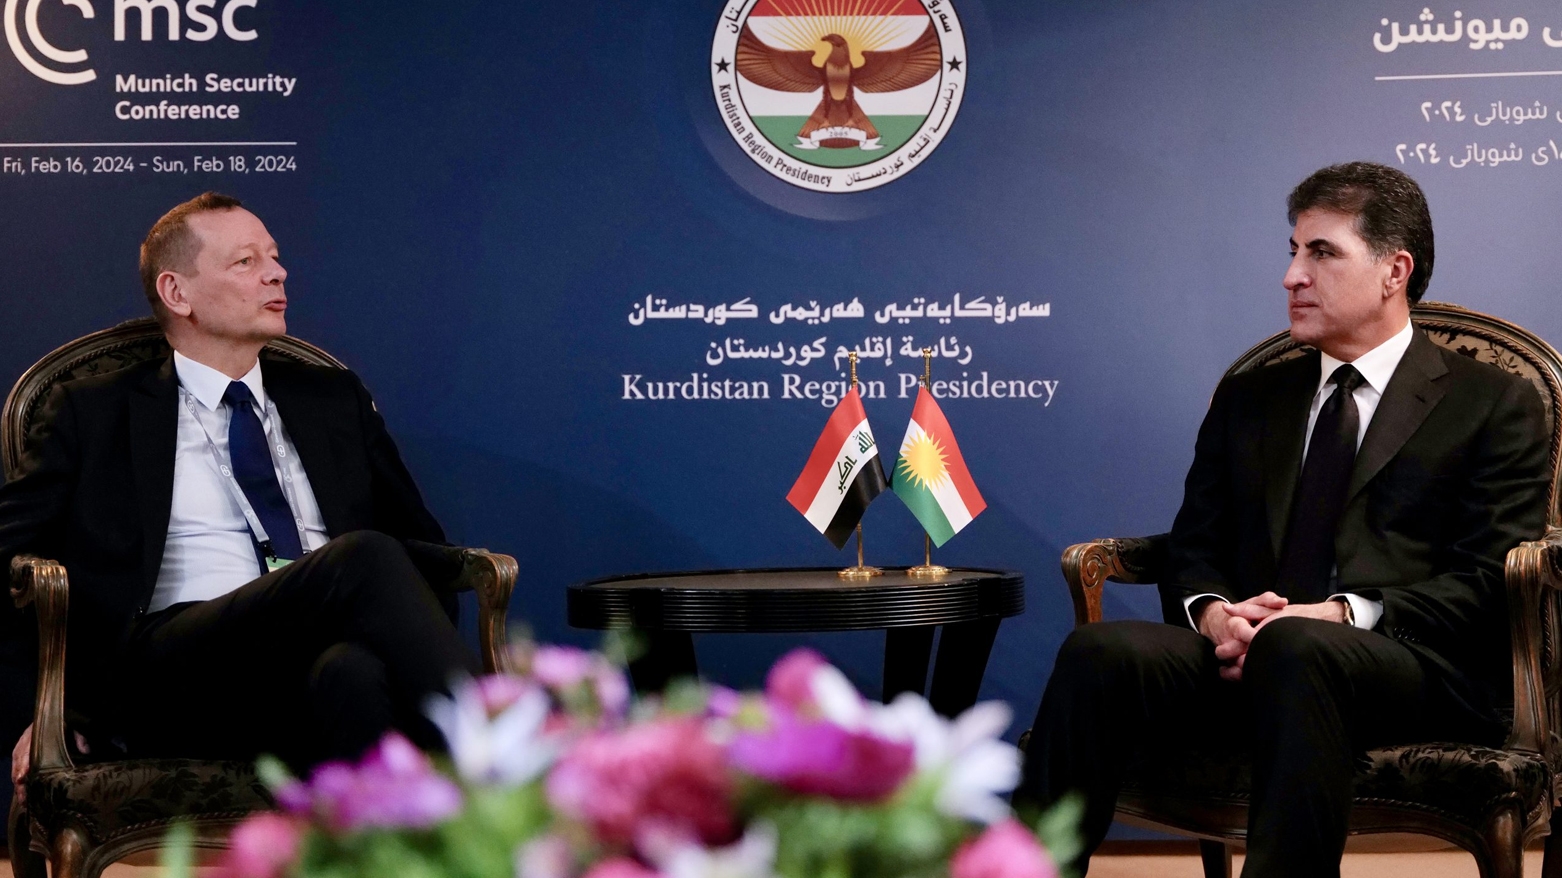 رئيس إقليم كوردستان يلتقي مستشارين للرئيس الفرنسي